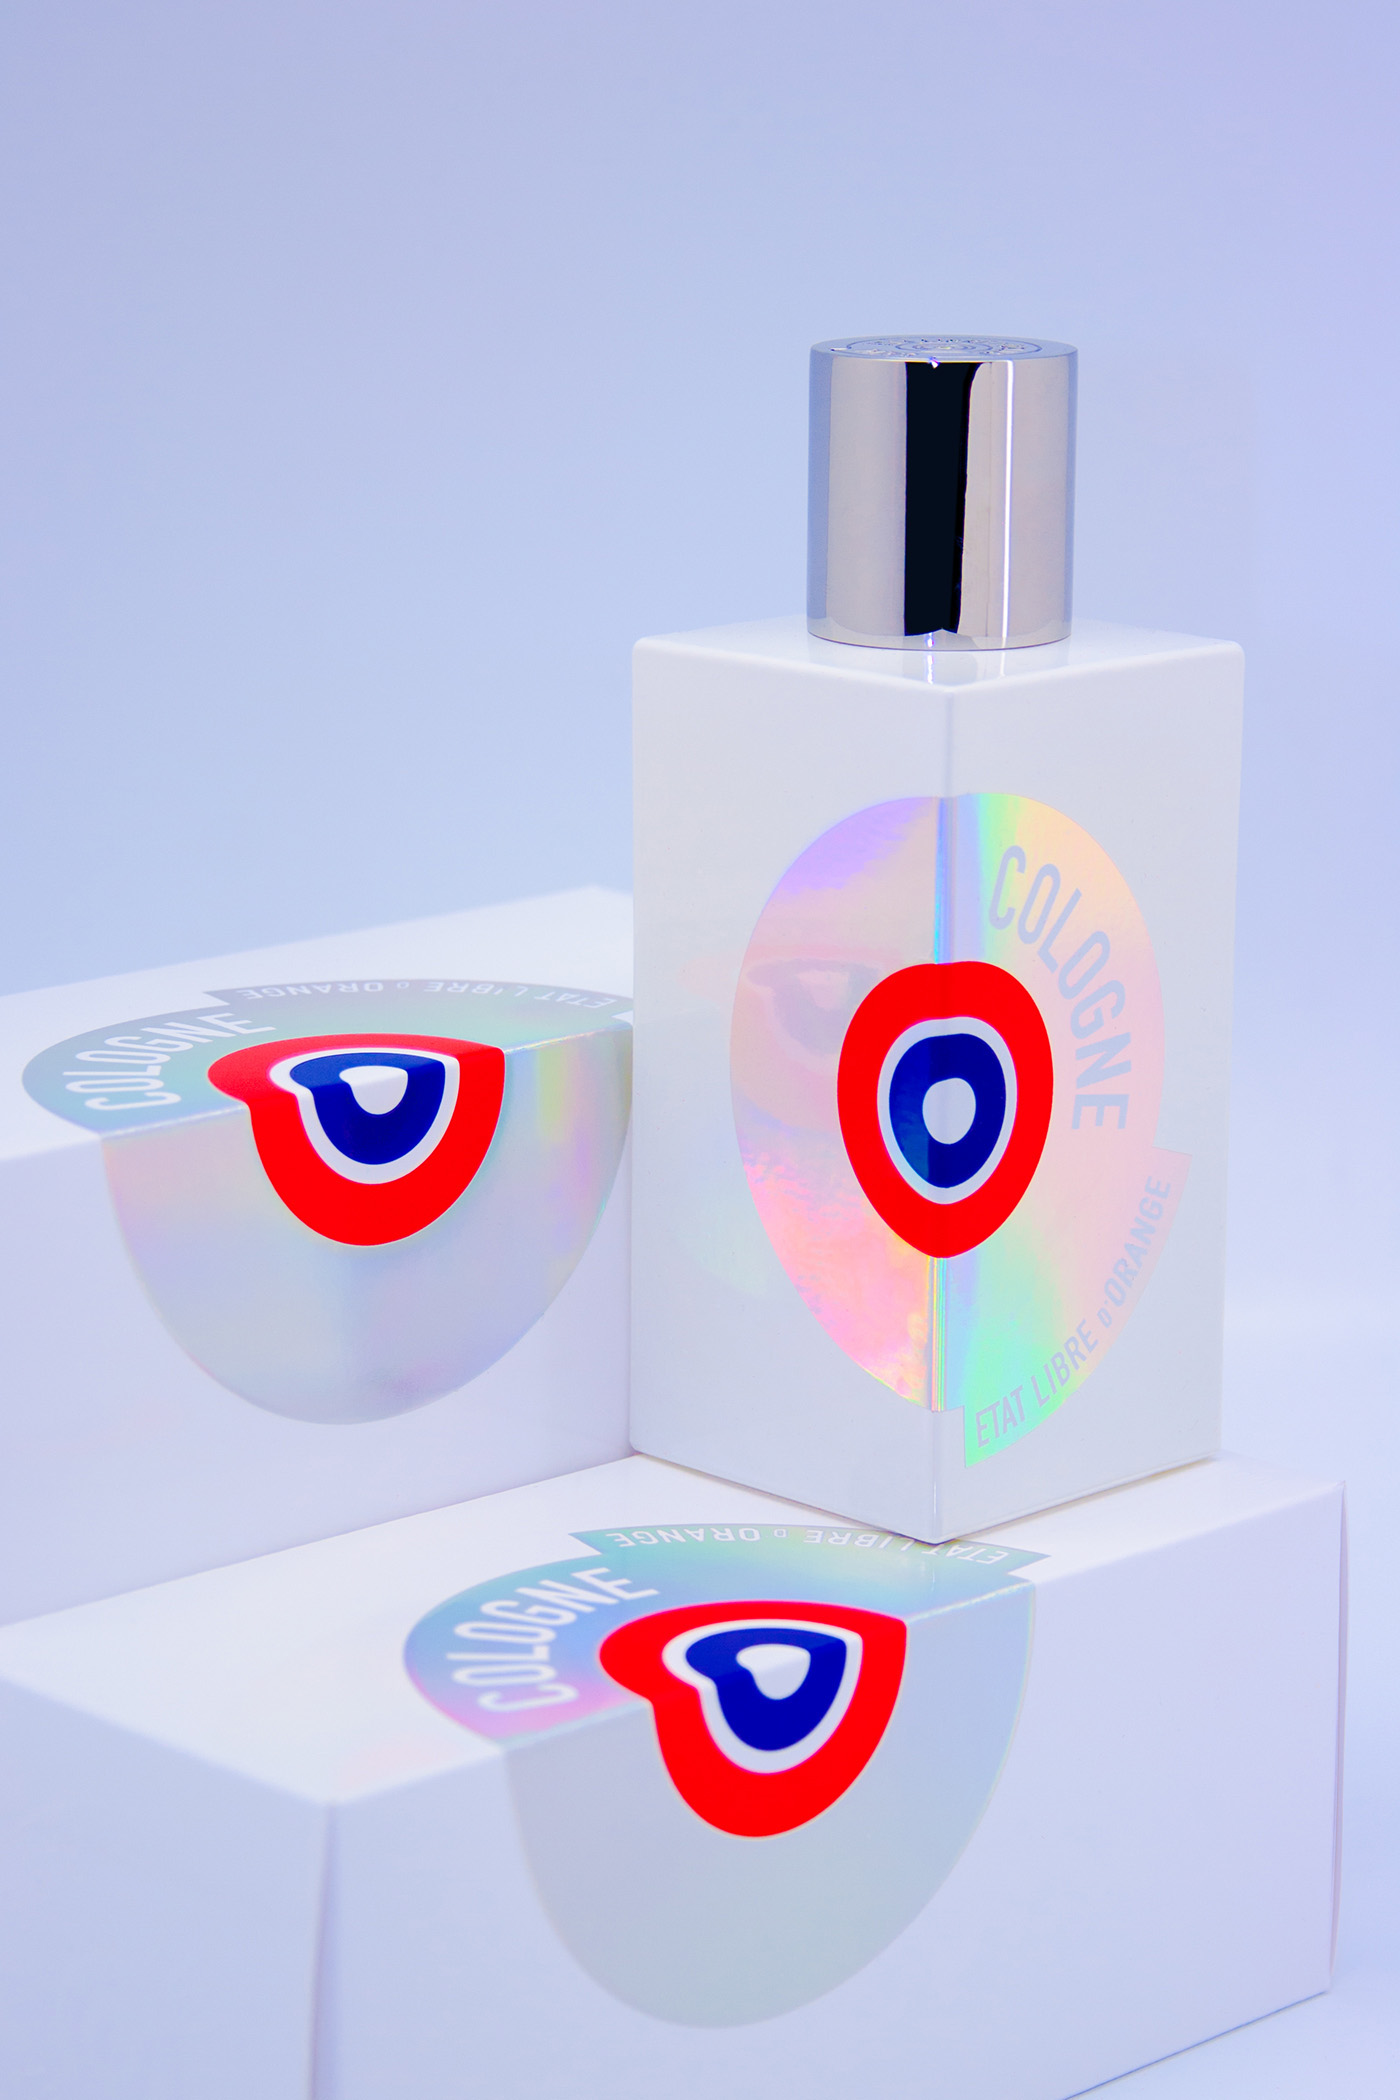 cologne eau de parfum etat libre d'orange luxury luxe brand portfolio identity Self Promotion